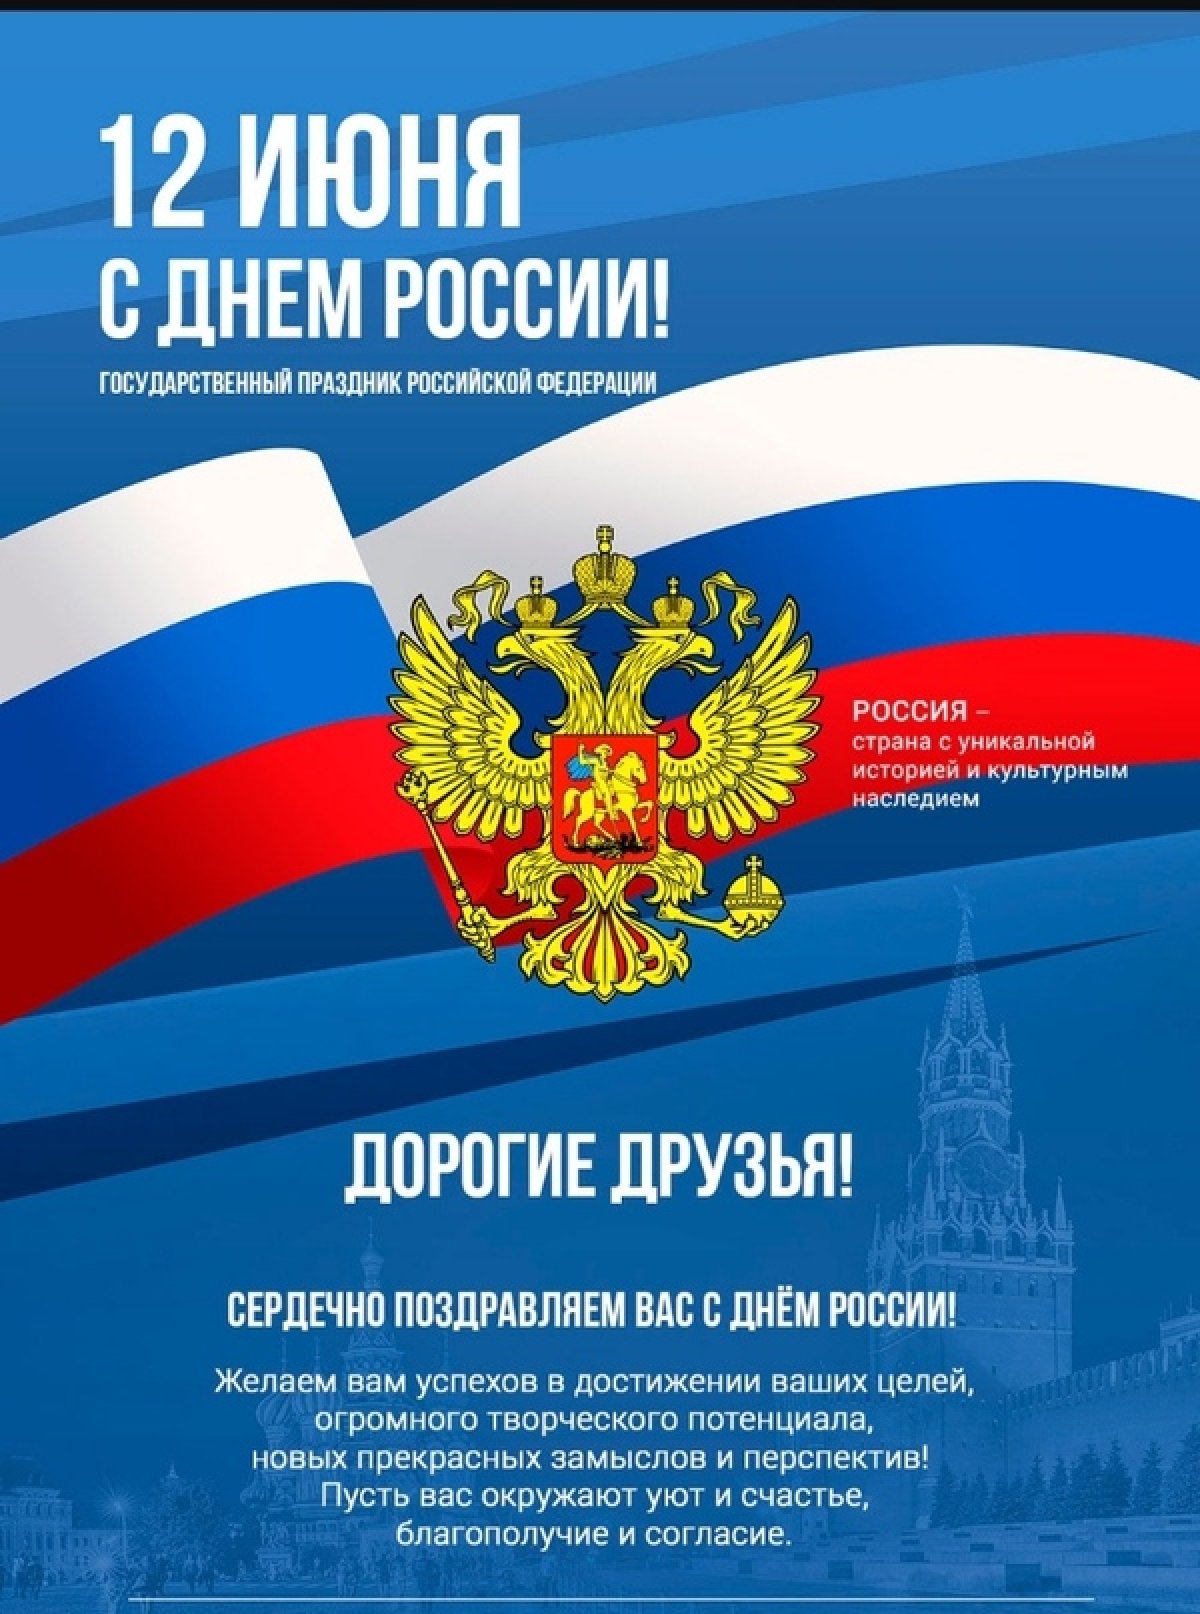 Поздравляем с Днем России! Величие и мощь нашей страны вызывает трепет и уважение. Пусть в душе каждого будет место для любви к своей Родине